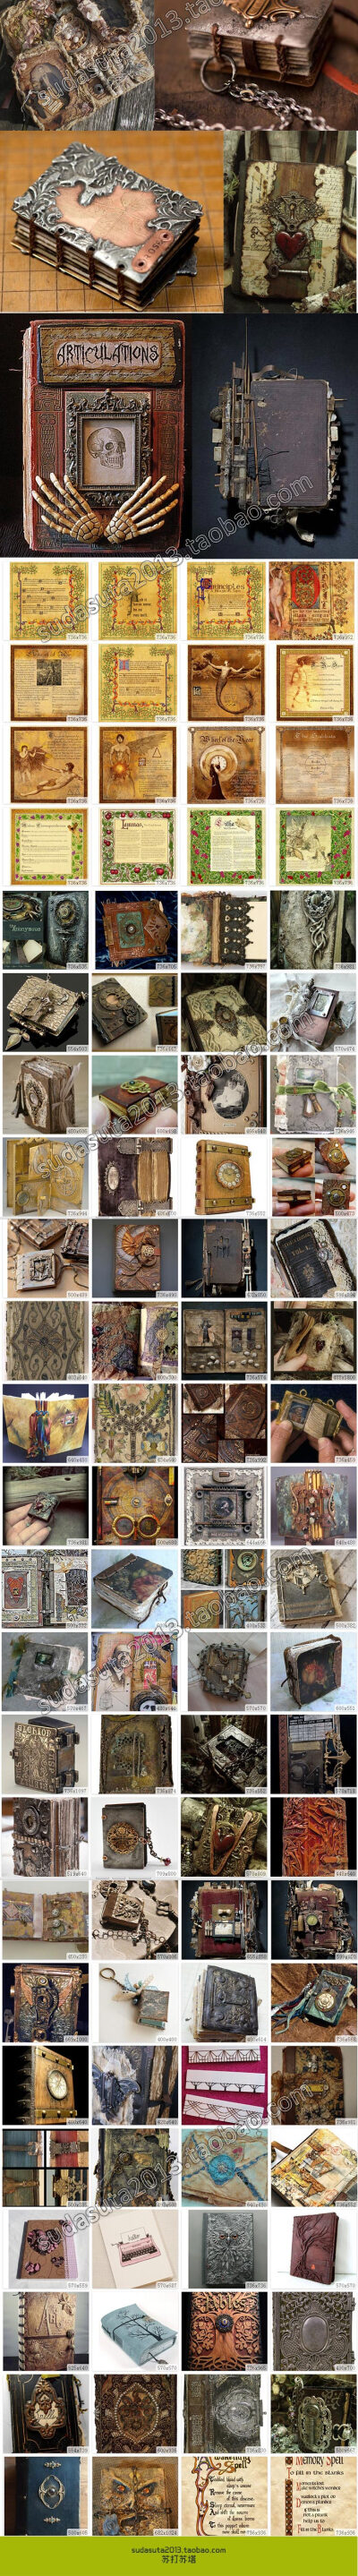 6000张魔法书 圣经旧书咒语书手工书籍书页残页破旧的书 摄影图片